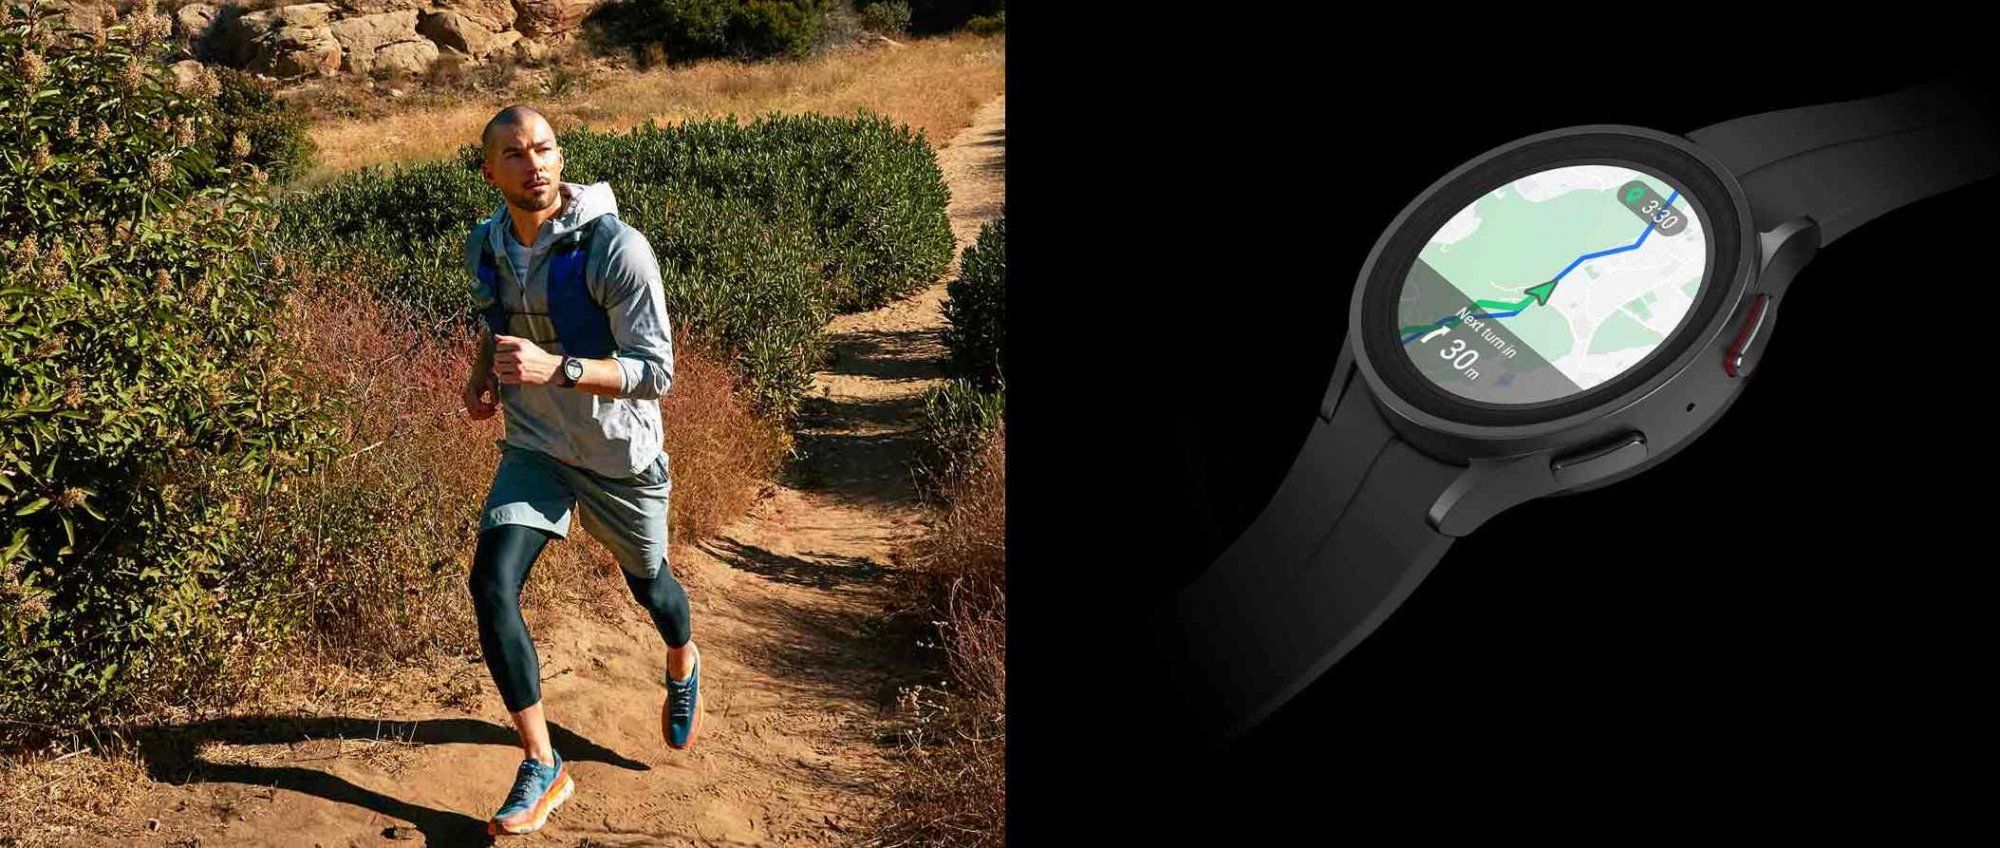 Samsung Galaxy Watch4 chytré hodinky výkonné chytré hodinky zdravotní funkce operační systém Wear OS jedinečné funkce vyspělé funkce Google Pay EKG míra okysličení krve fitness hodinky vlajkový výkon kvalitní materiál